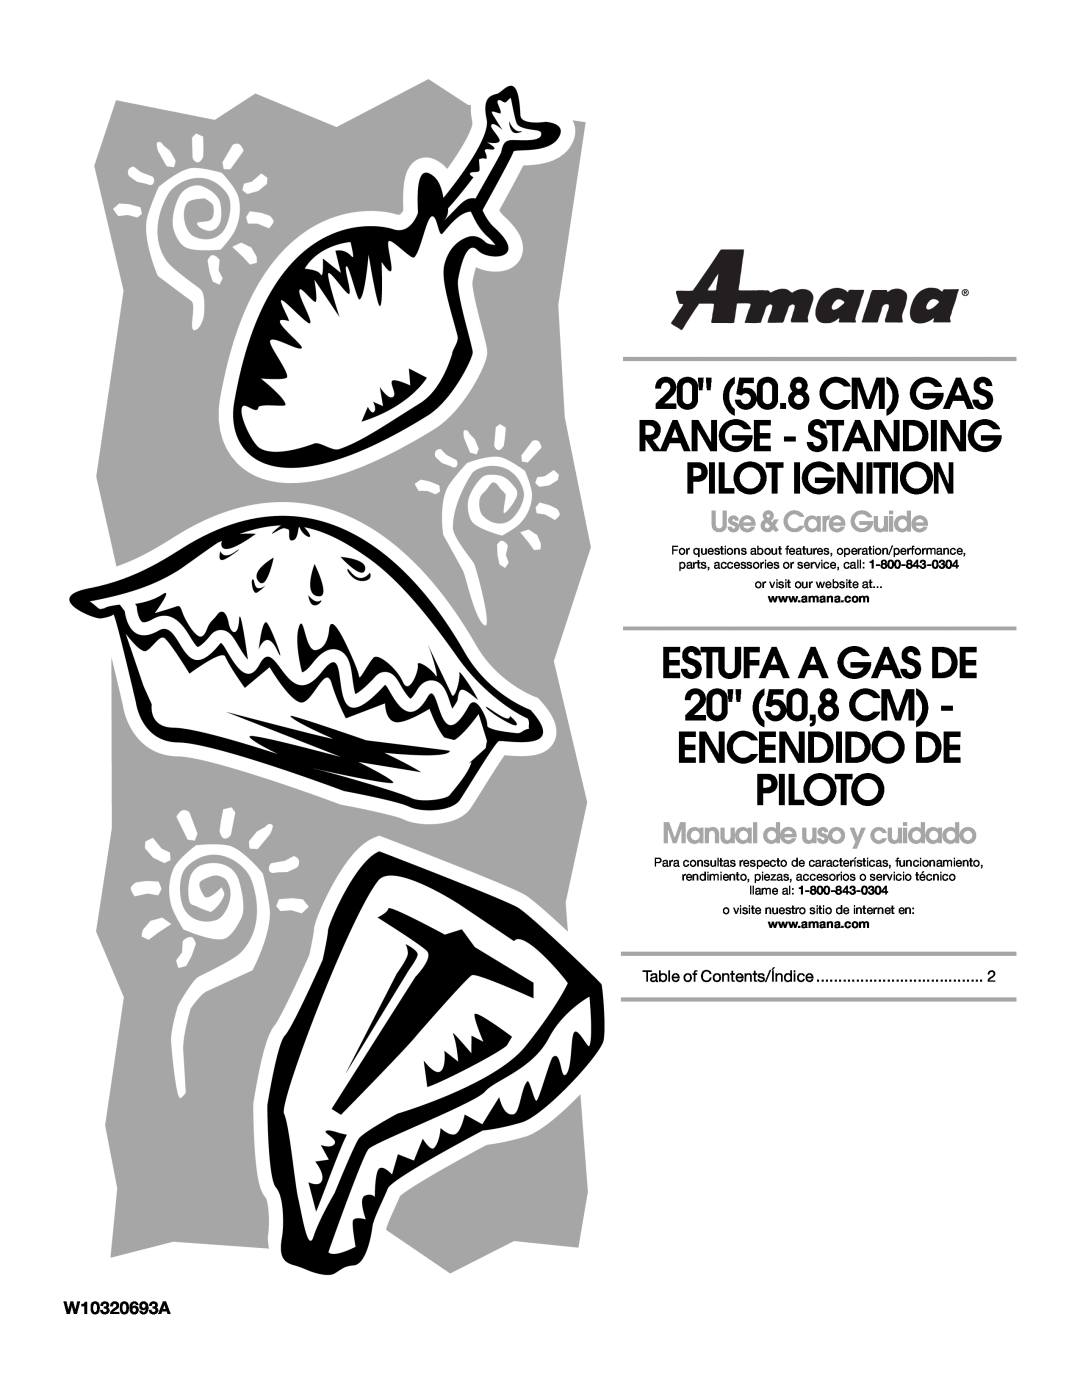 Amana W10320693A manual ESTUFA A GAS DE 20 50,8 CM ENCENDIDO DE PILOTO, 20 50.8 CM GAS RANGE - STANDING PILOT IGNITION 